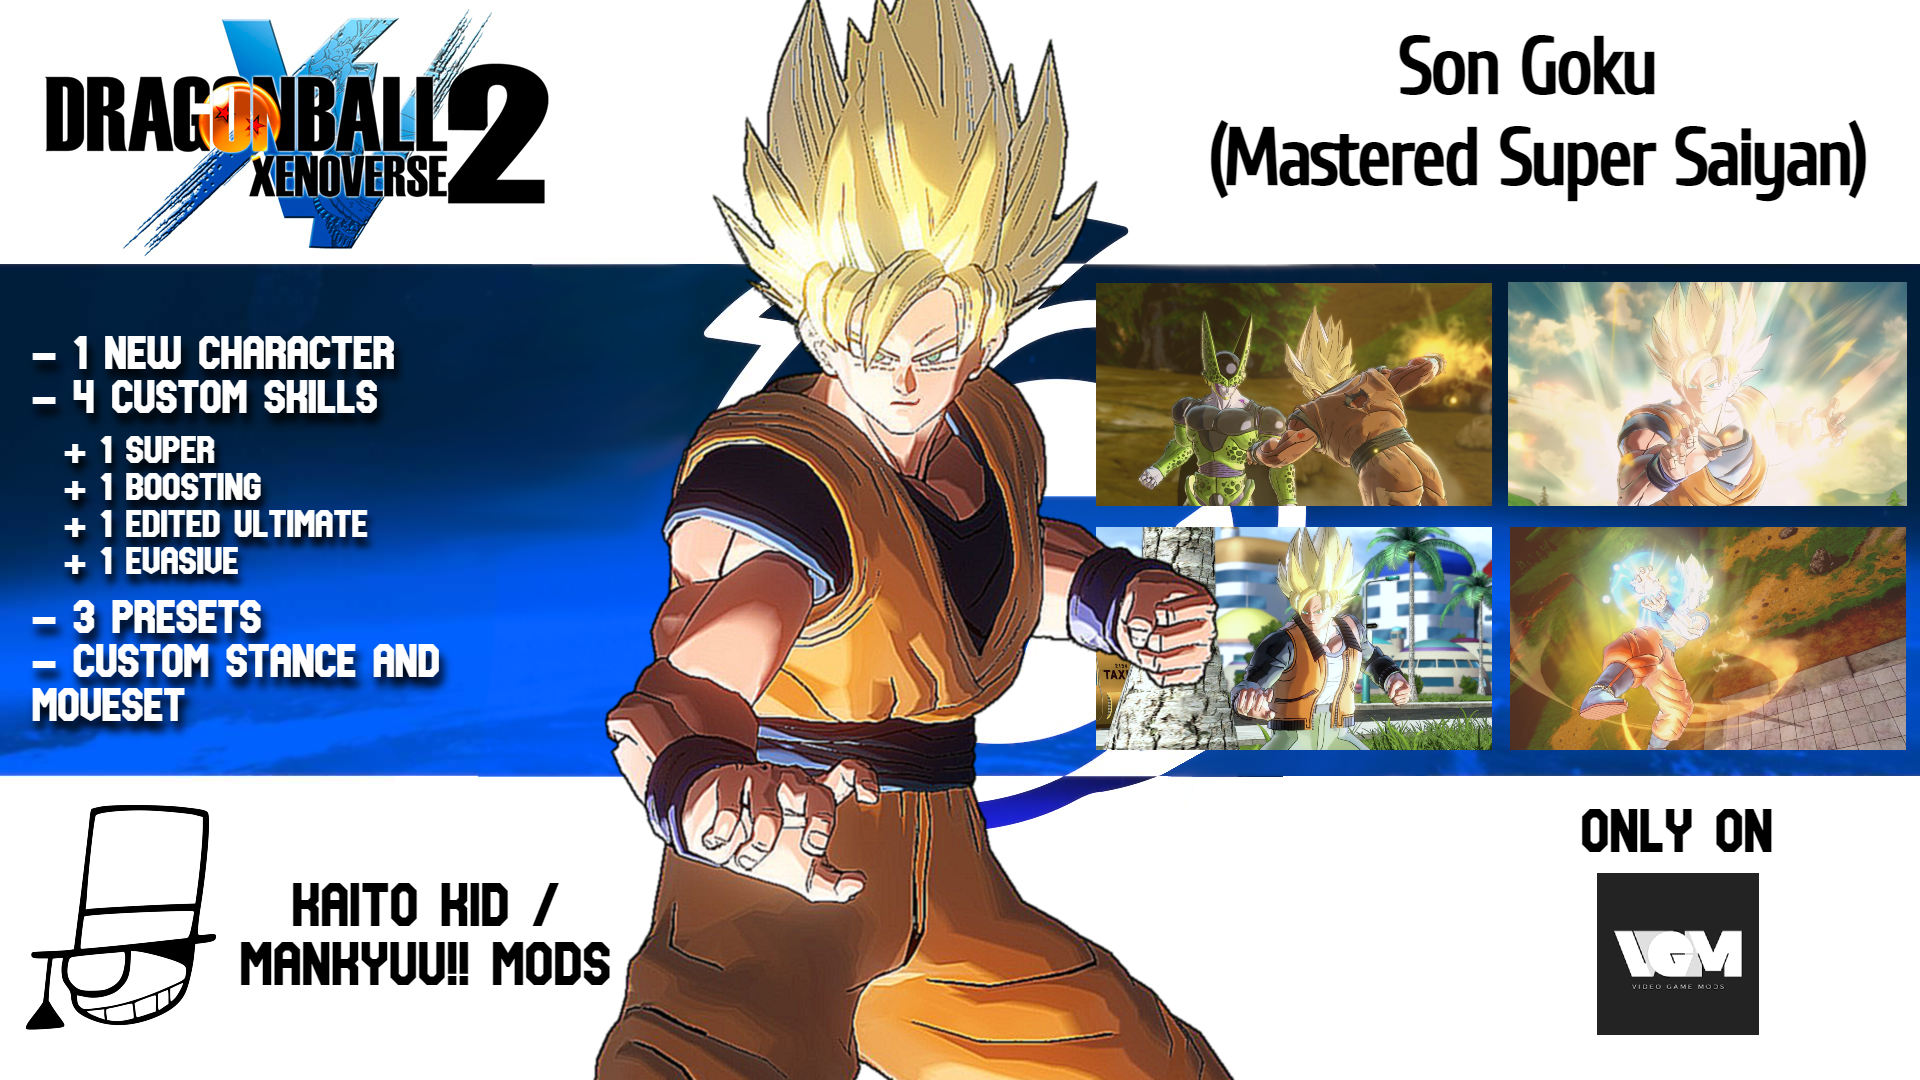 Son Goku (Mastered Super Saiyan)